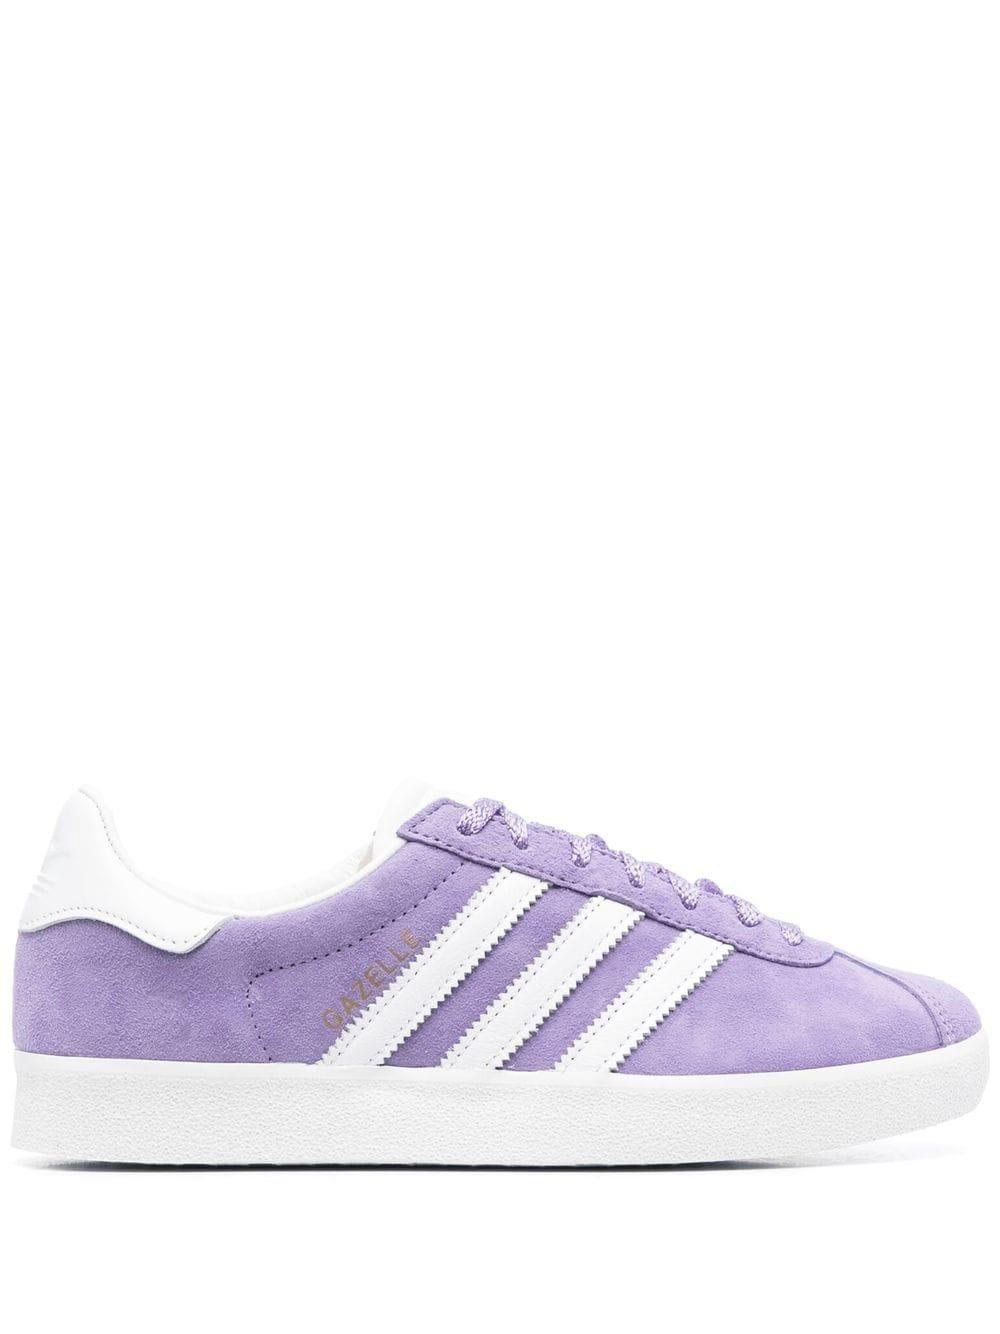 adidas Gazelle Suede Sneakers in Purple | Lyst